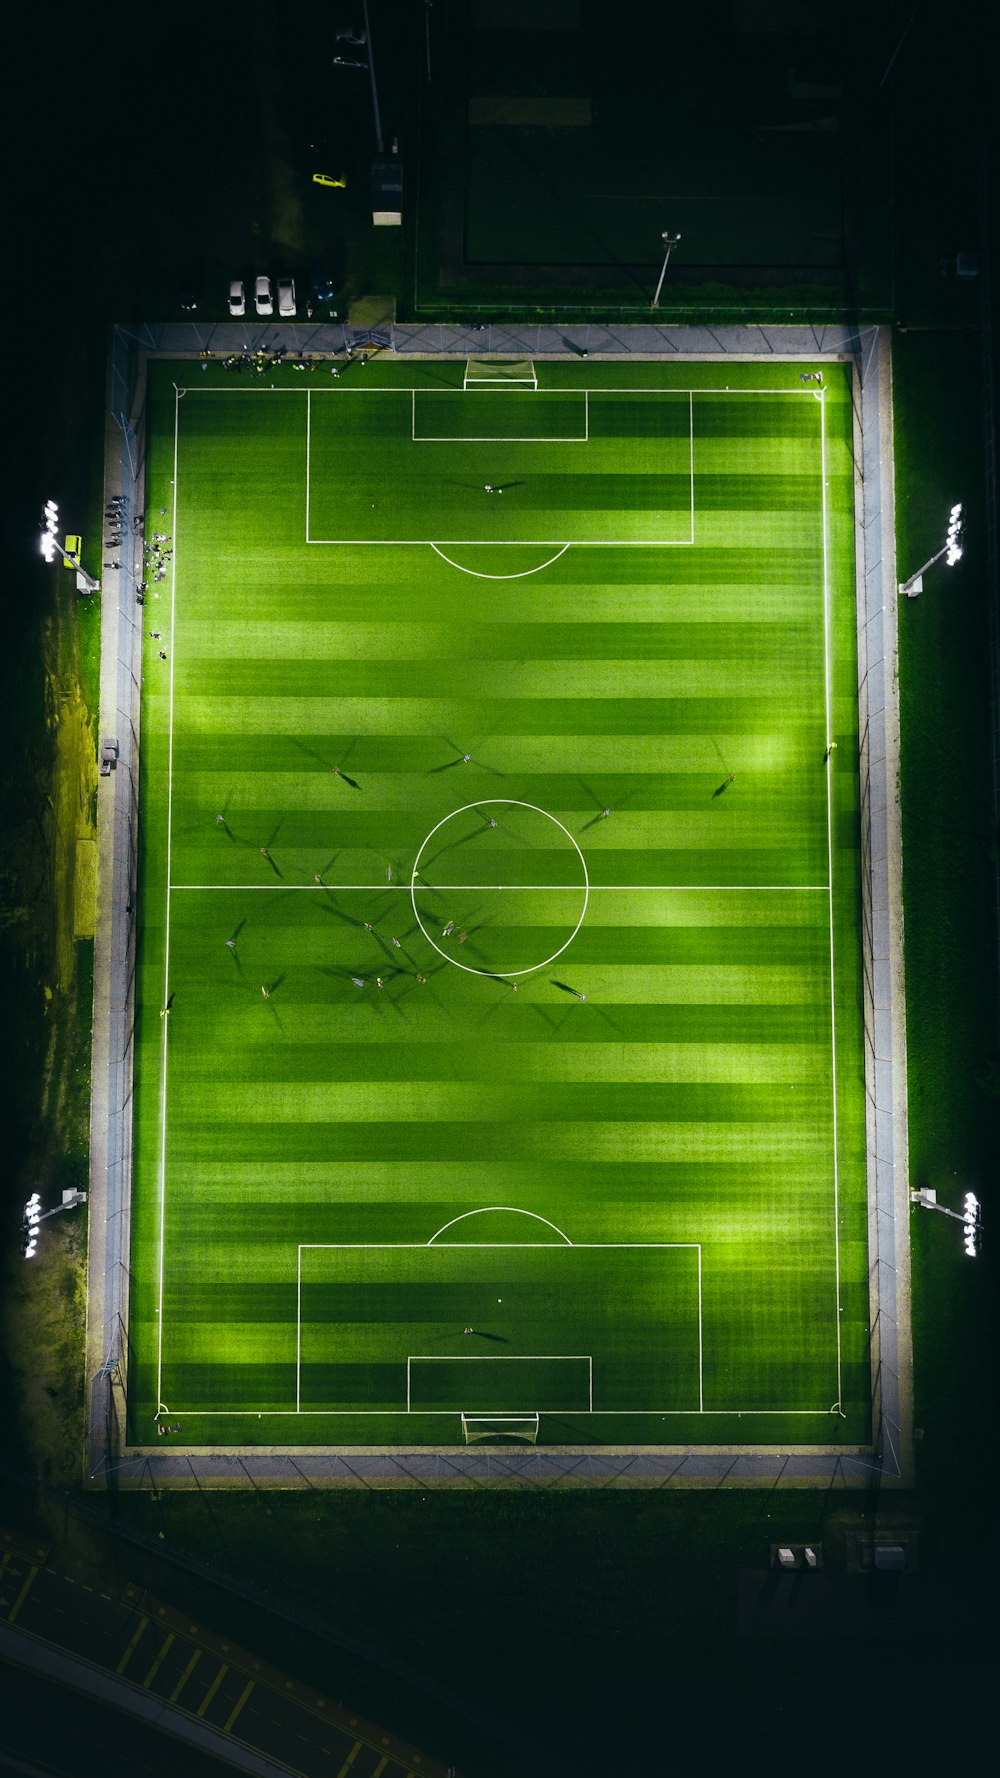 Foto Gol de futebol no campo de futebol – Imagem de Futebol grátis no  Unsplash